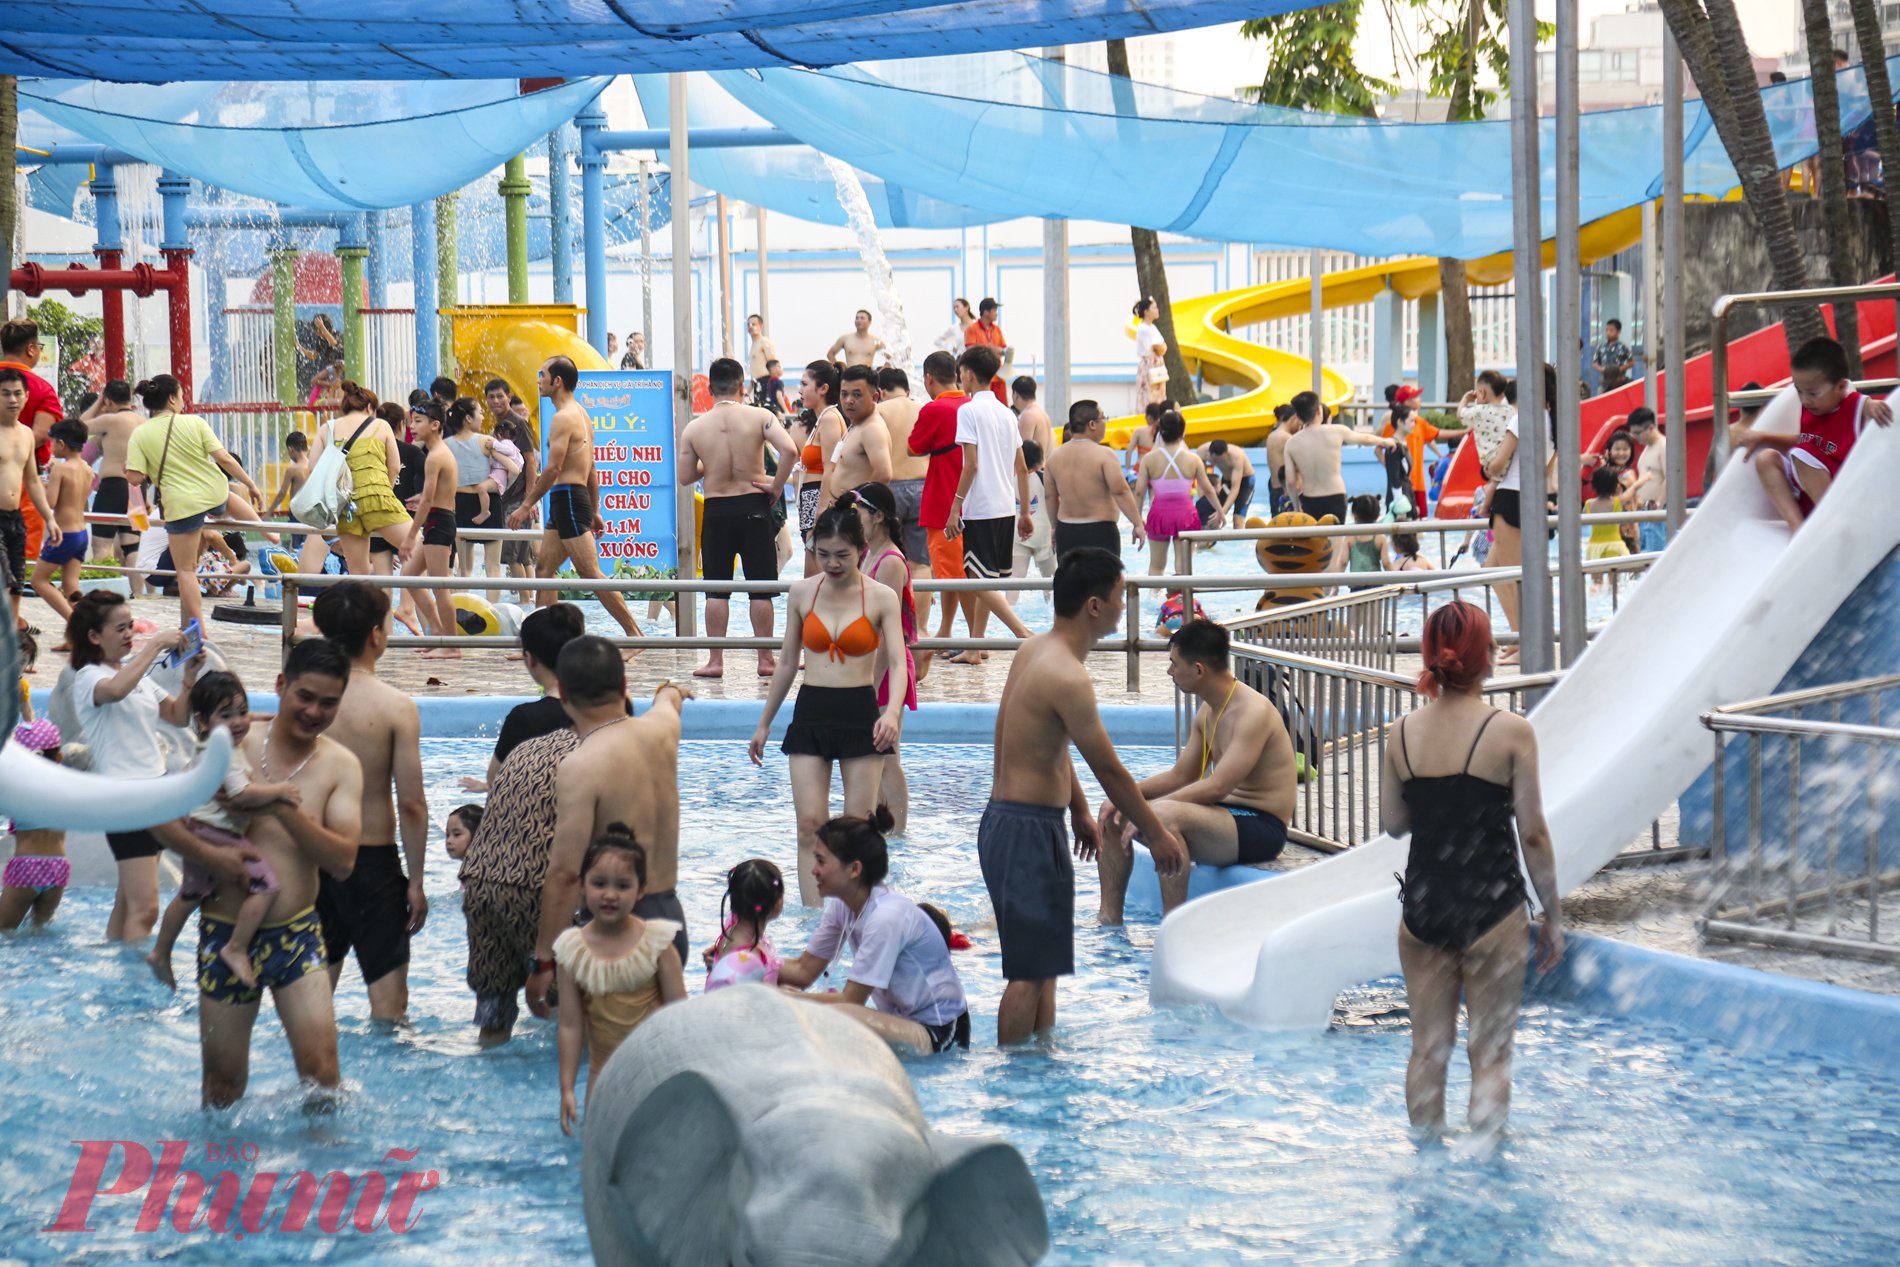 Thời tiết tại Hà Nội dịp nghỉ lễ có phần nắng nóng nên nhiều người đã lựa chọn Công viên nước Hồ Tây để vui chơi. 